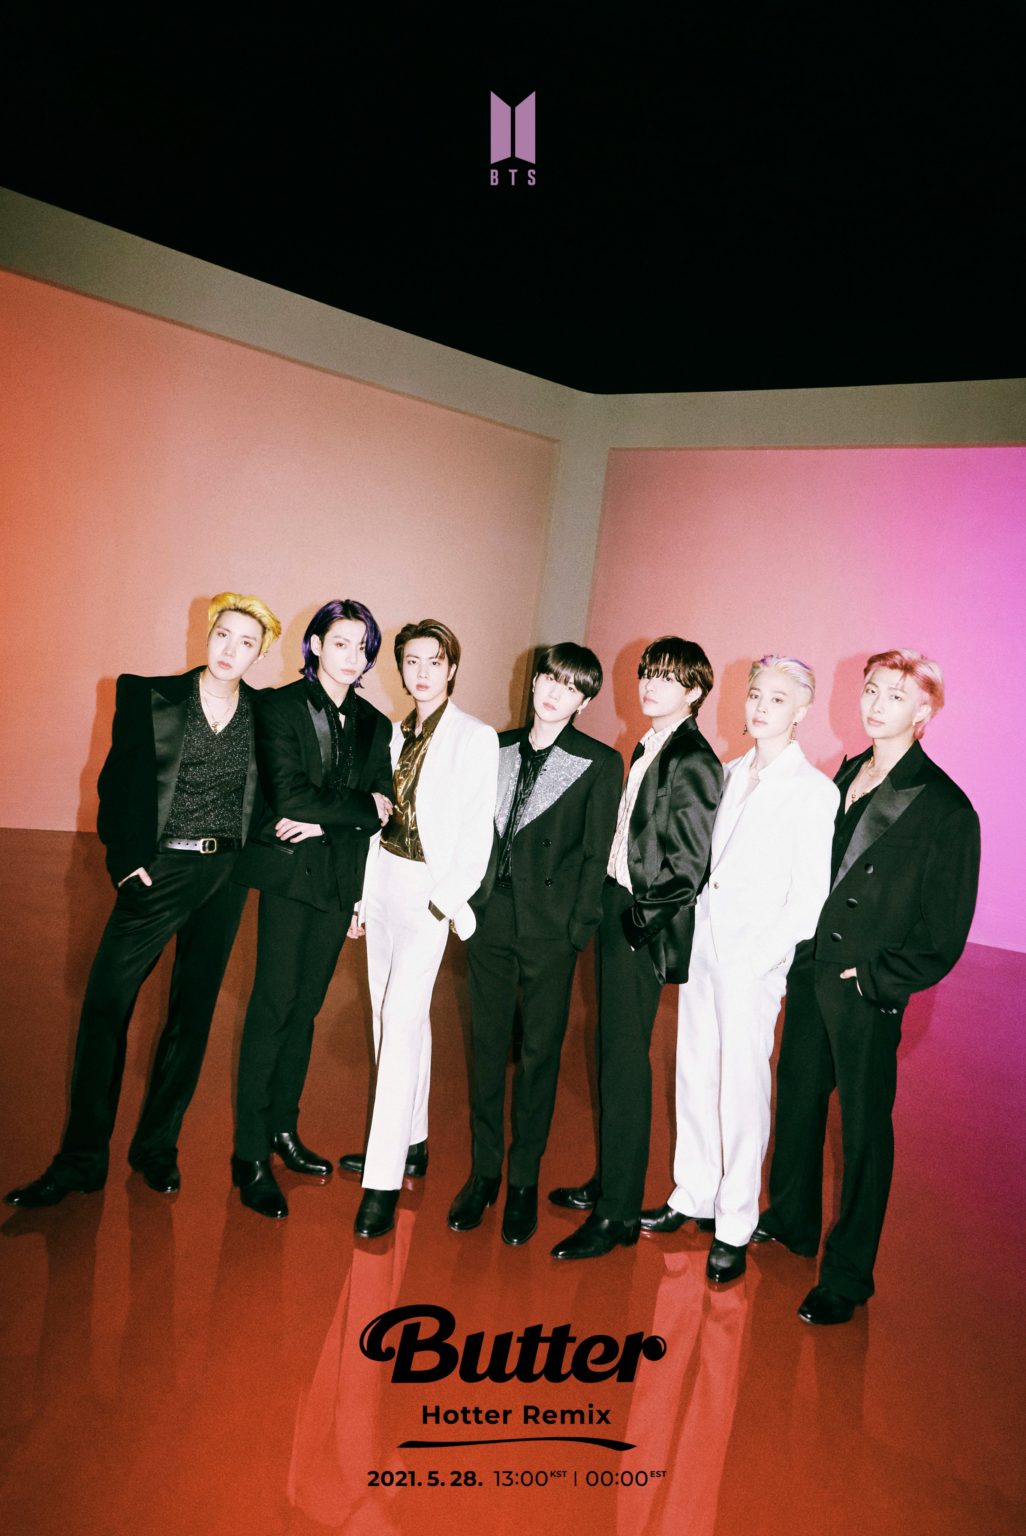 BTS Butter Hotter Remix Teaser Photos (HD/HQ) - K-Pop Database / dbkpop.com